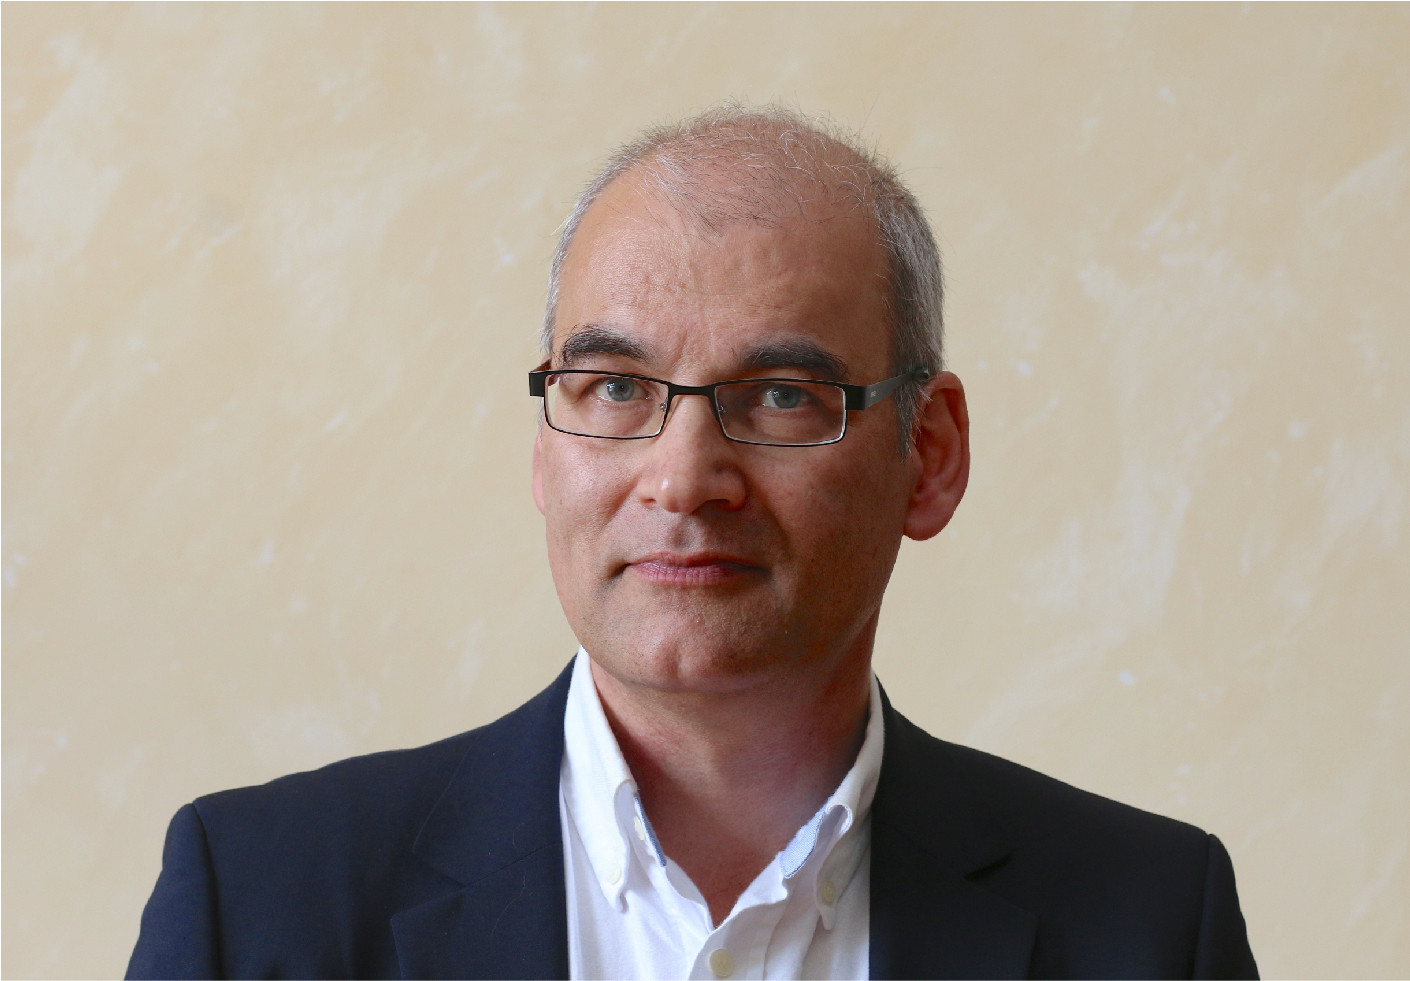 Porträt des Journalisten Christopher Schrader in schwarzem Jackett und weißem Hemd